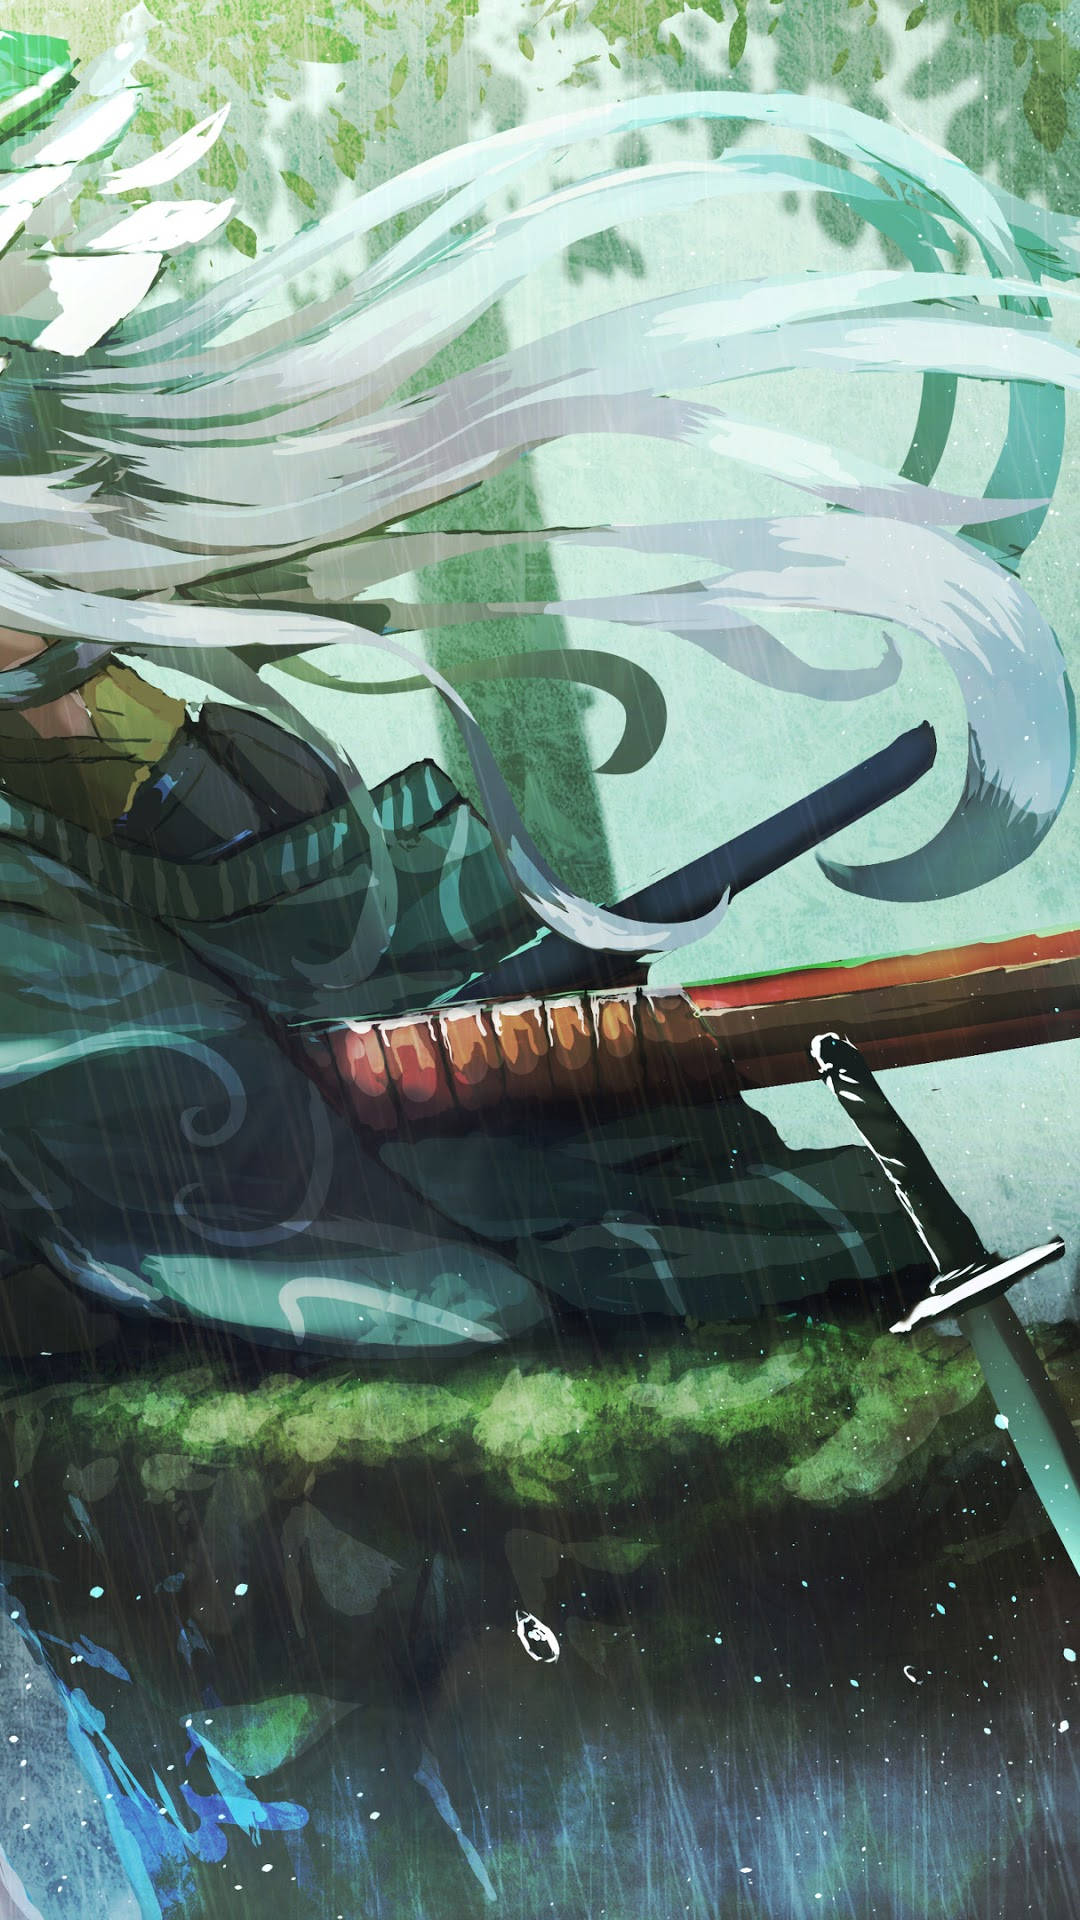 En enlig Samurai begiver sig ud på en farlig mission for at beskytte hans land. Wallpaper